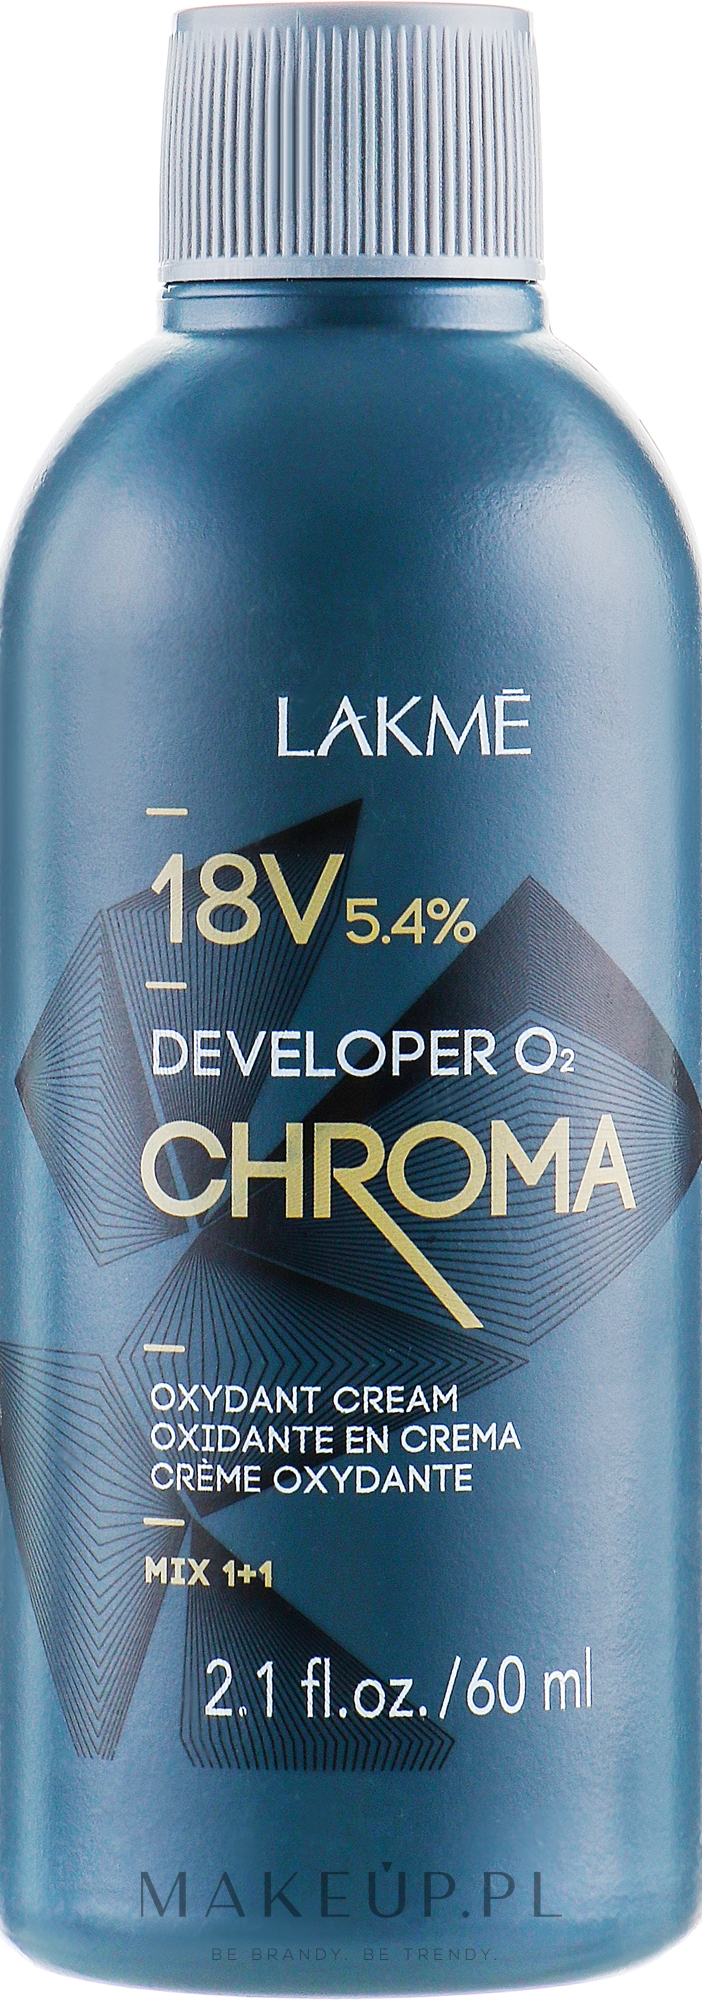 Oksydant w kremie 5,4% (18 vol.) - Lakmé Chroma Developer 02 Oxydant Cream — Zdjęcie 60 ml